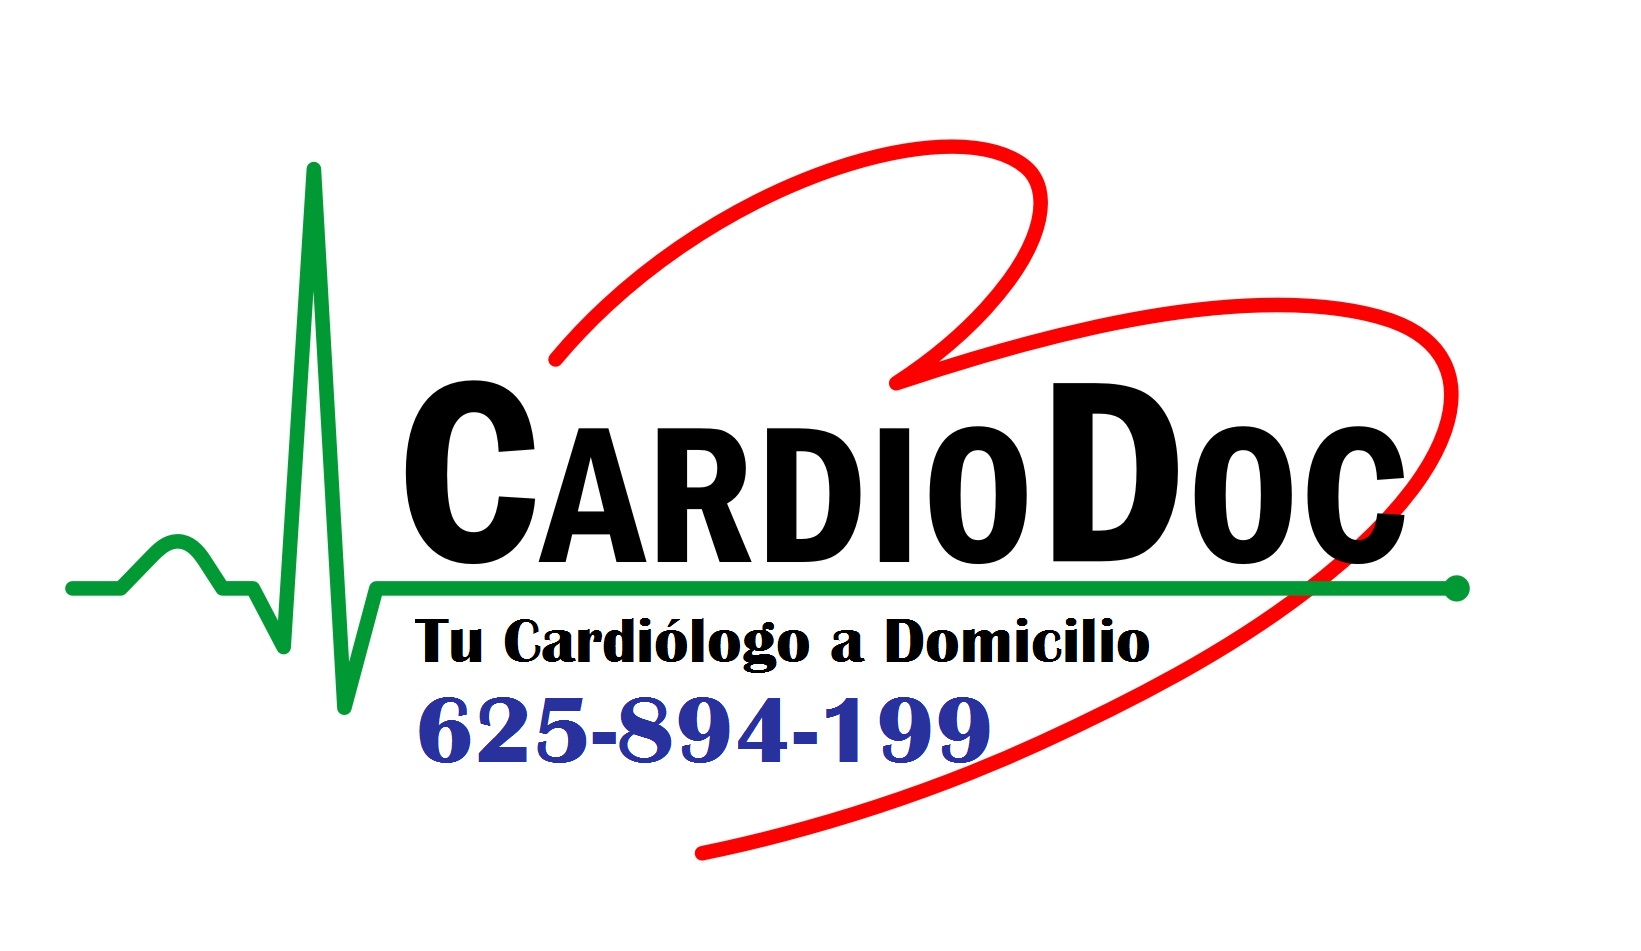 Visita el Facebook de CardioDoc